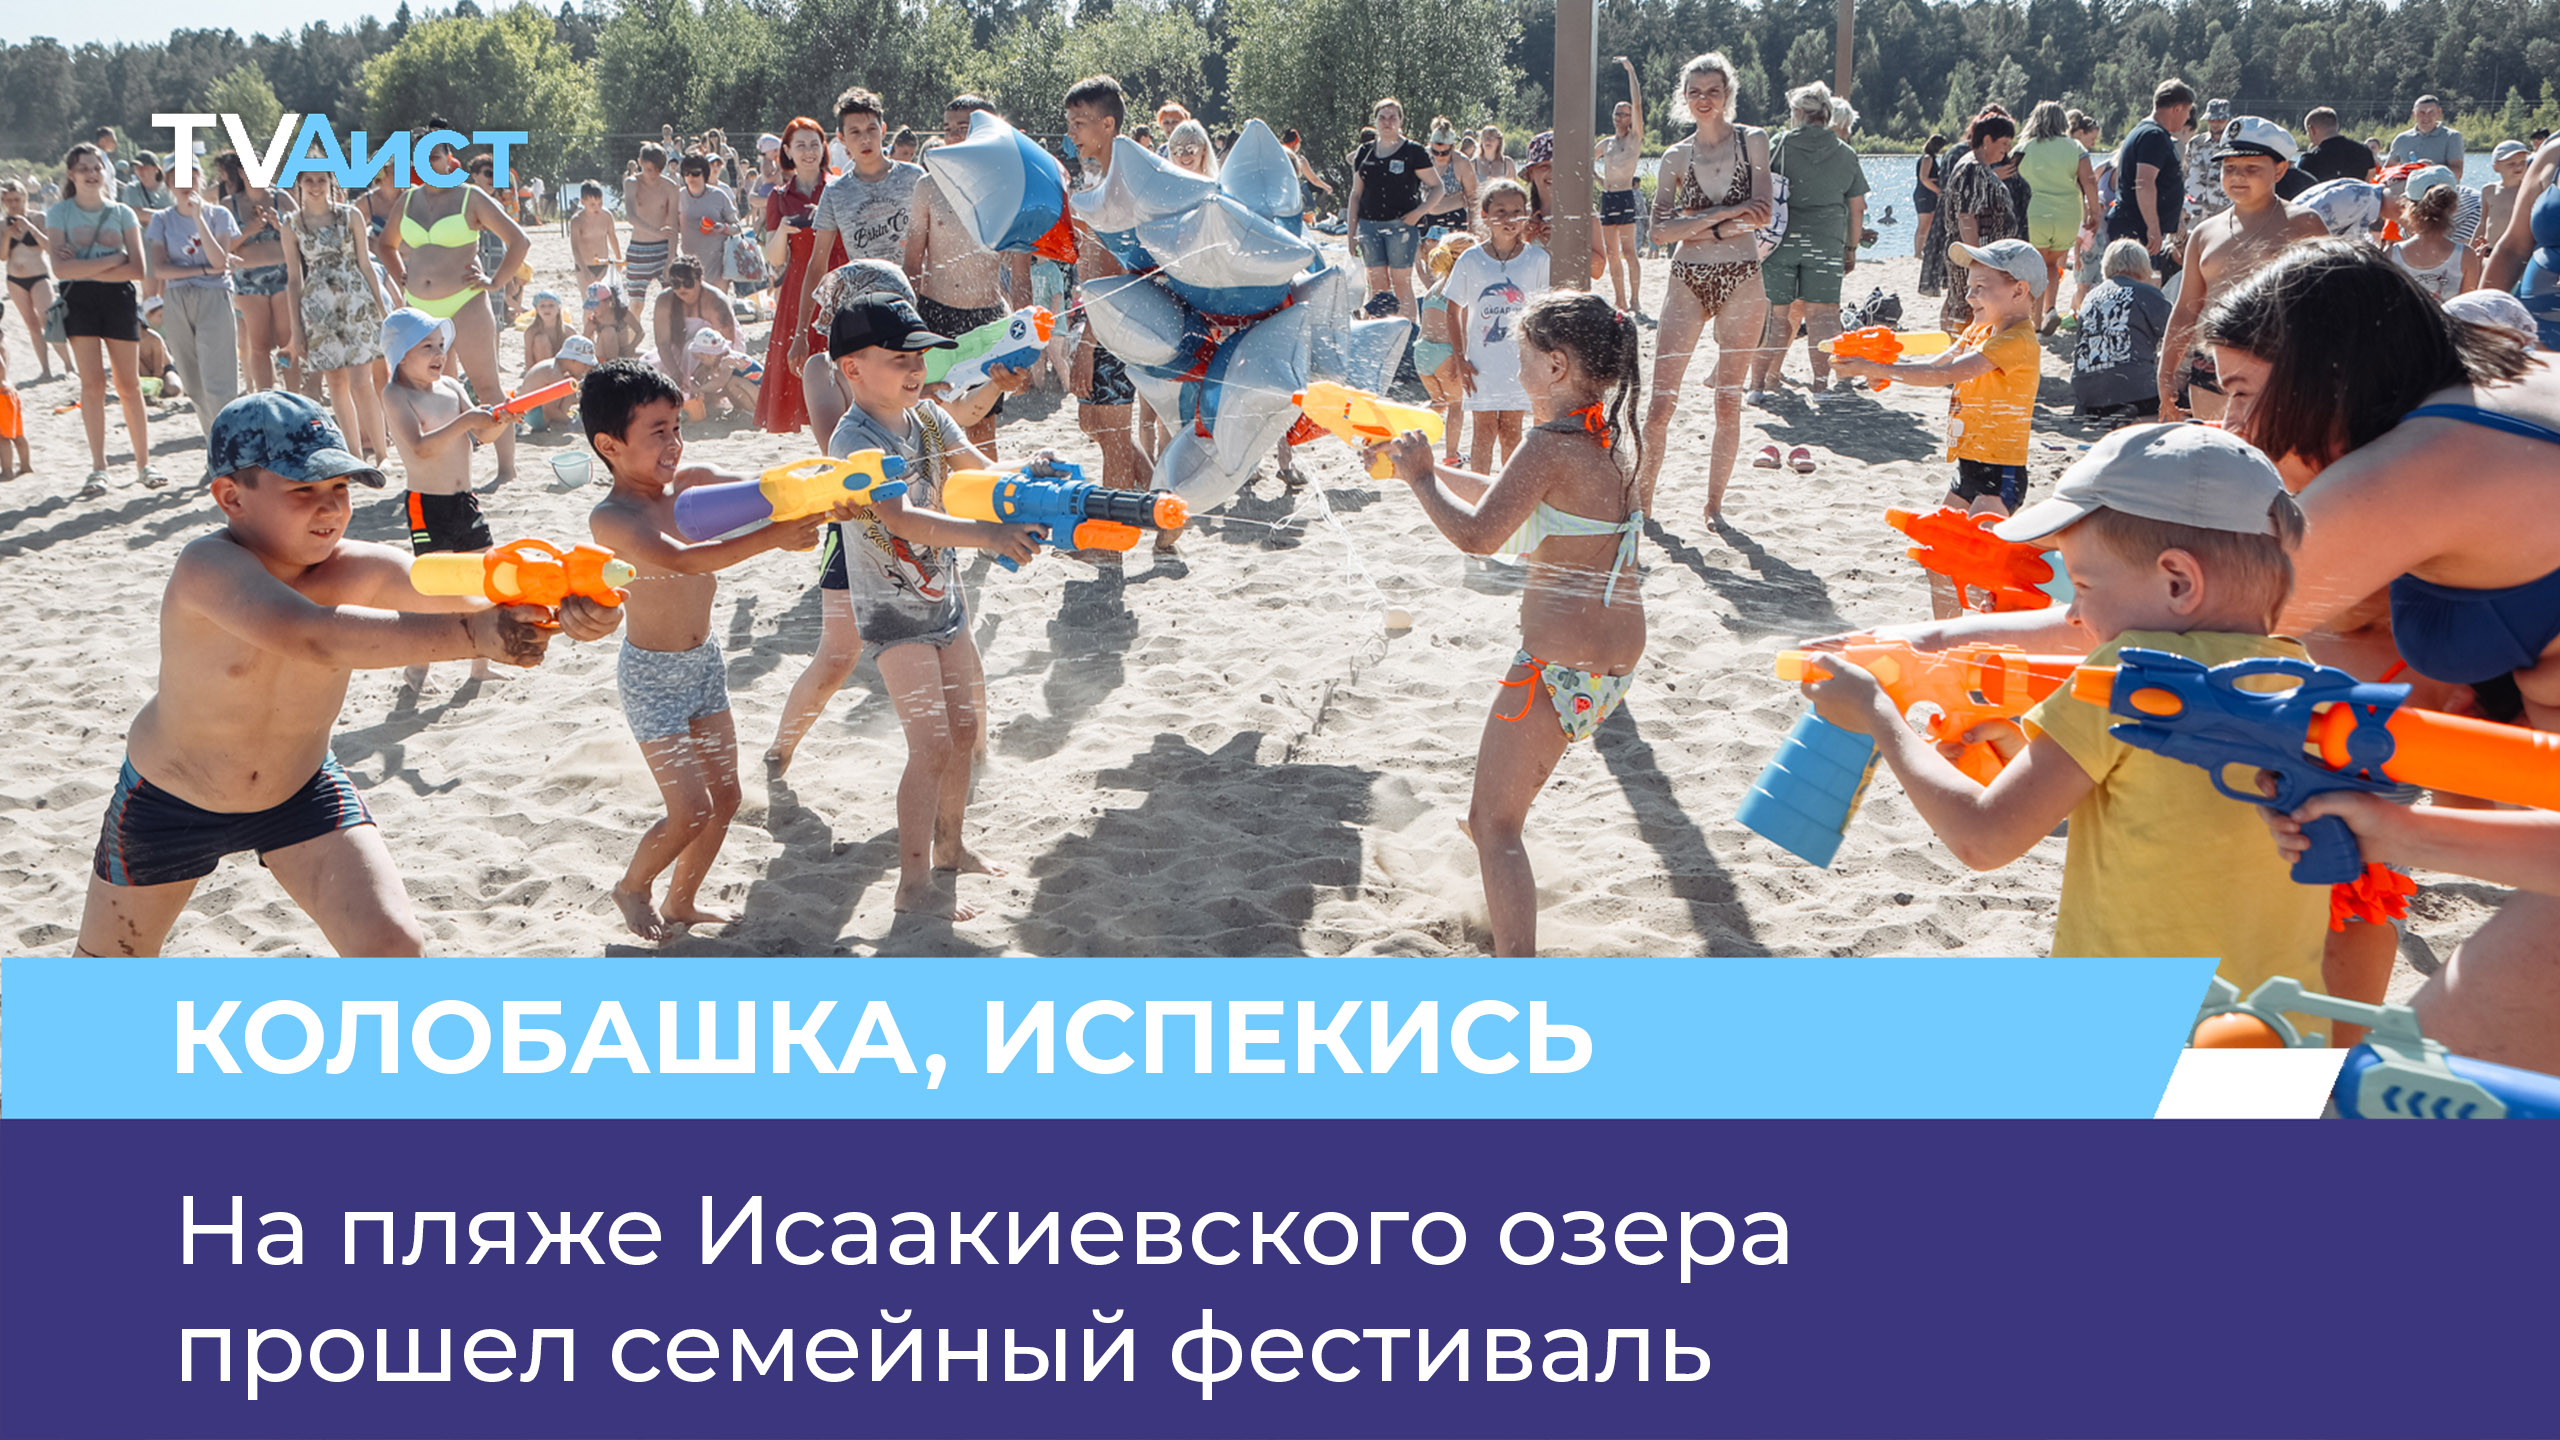 На пляже Исаакиевского озера прошел семейный фестиваль «Колобашка»